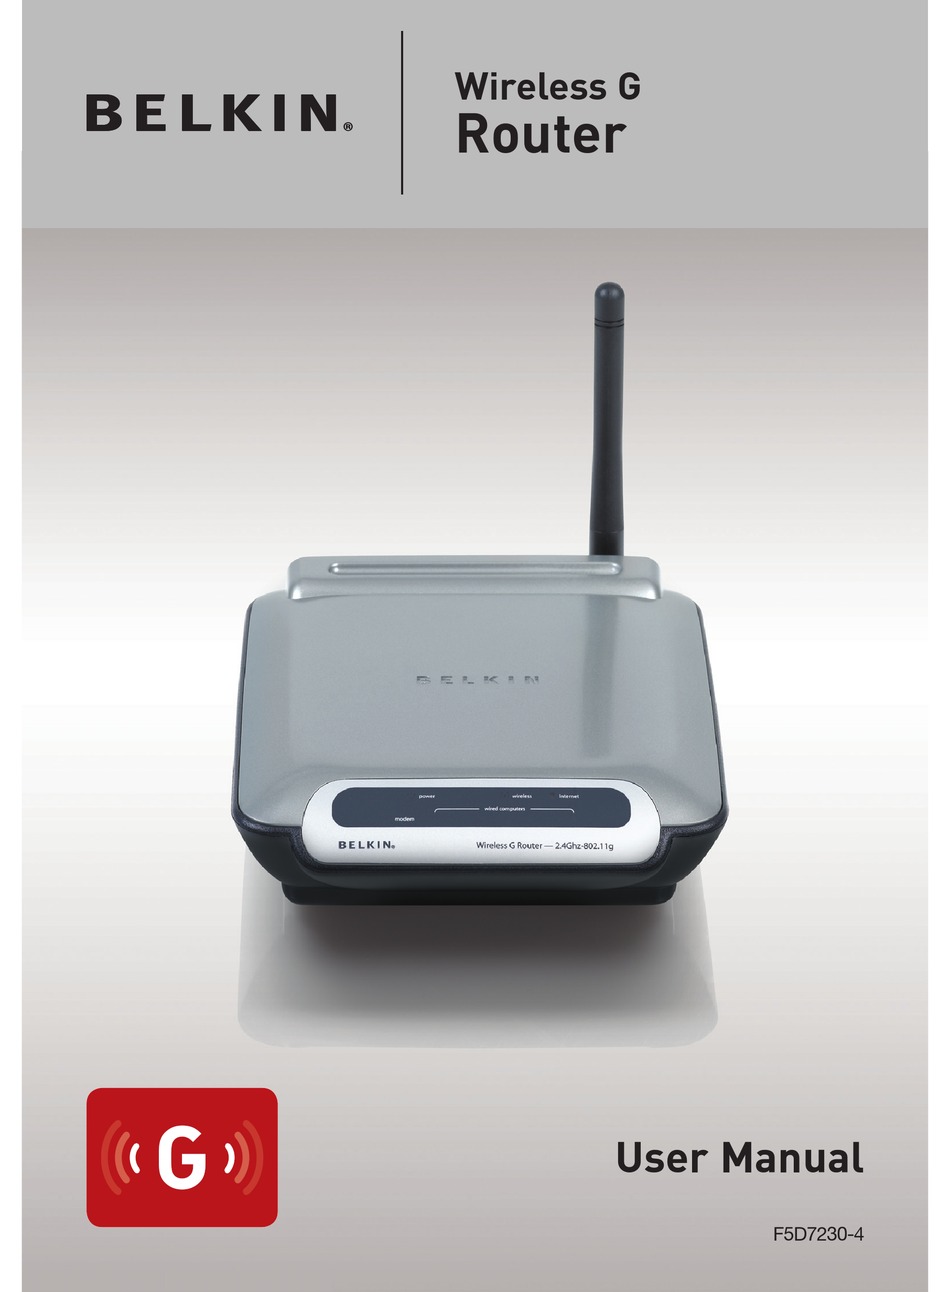 belkin wireless g travel router